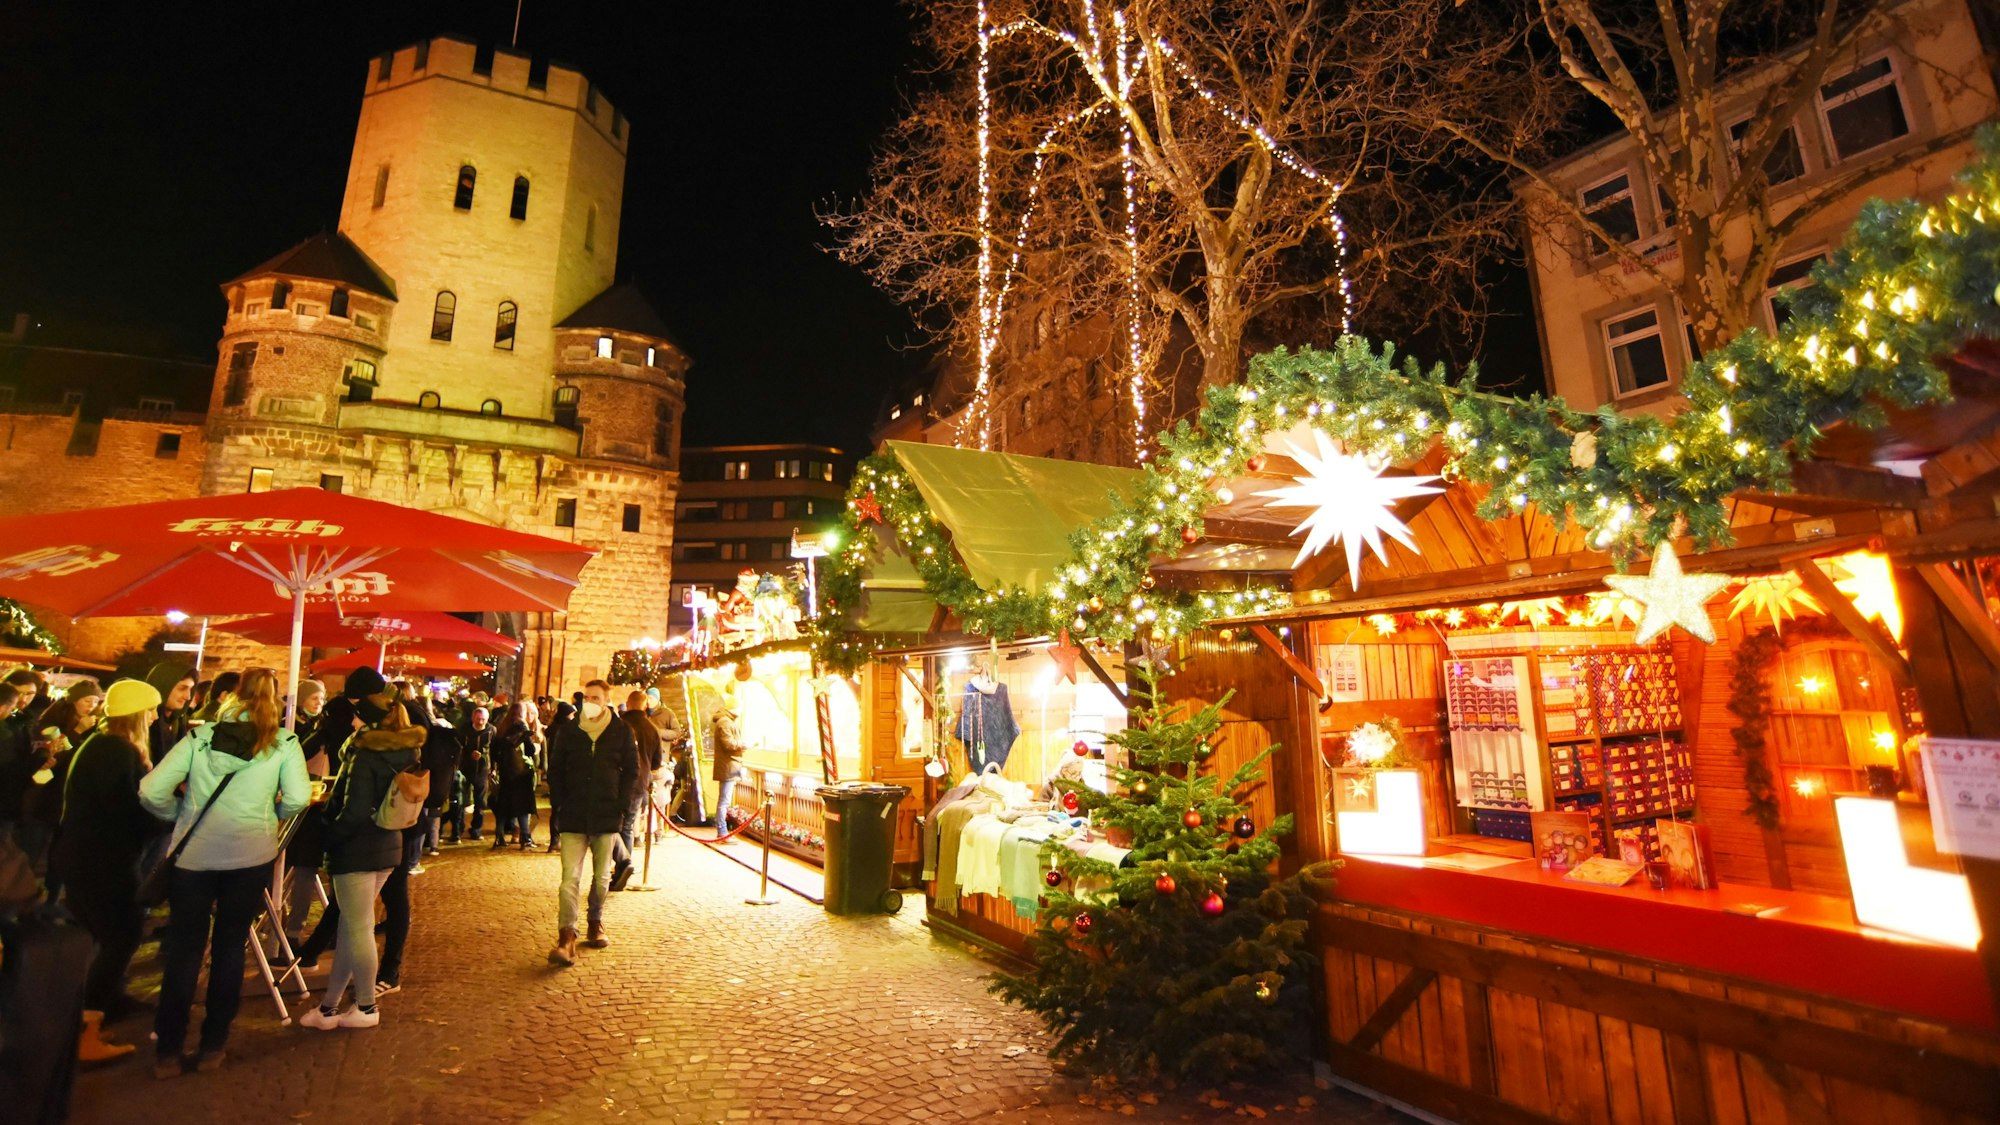 24.11.2021 Köln.
Weihnachtsmarkt auf dem Chlodwigplatz.